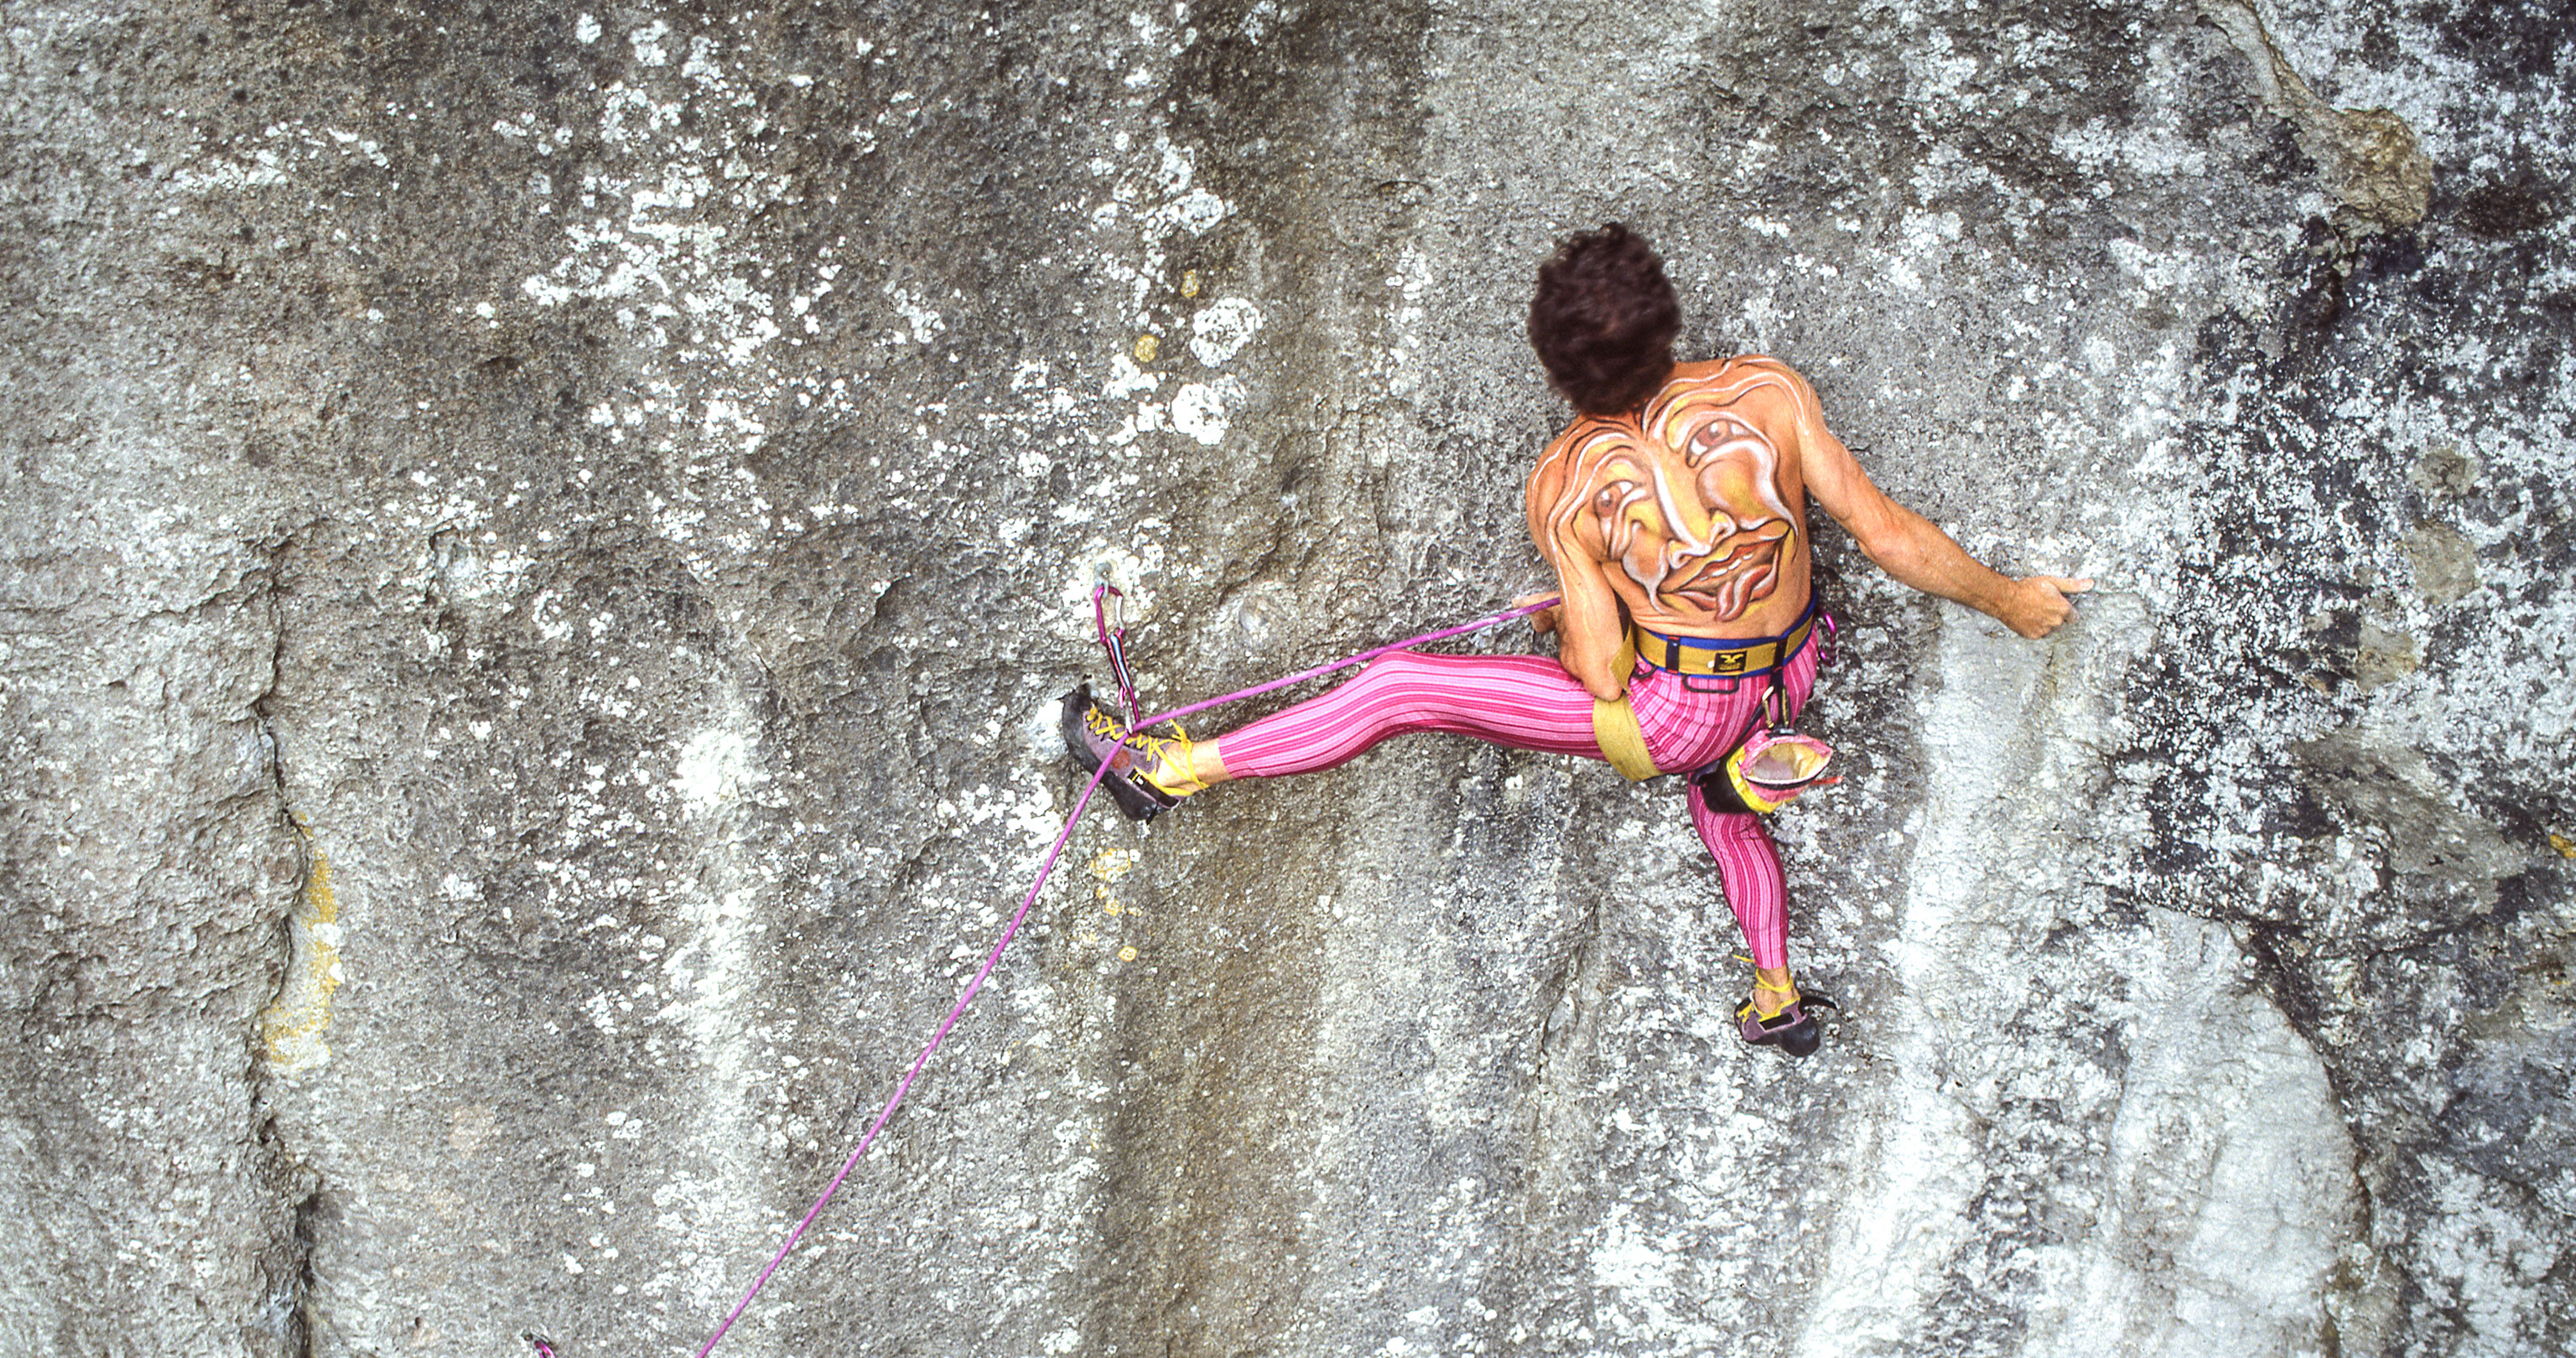 Sepp Gschwendtner beim Rotpunkt Klettern im Altmühltal mit pinkfarbener Hose und Bodypainting auf dem Rücken